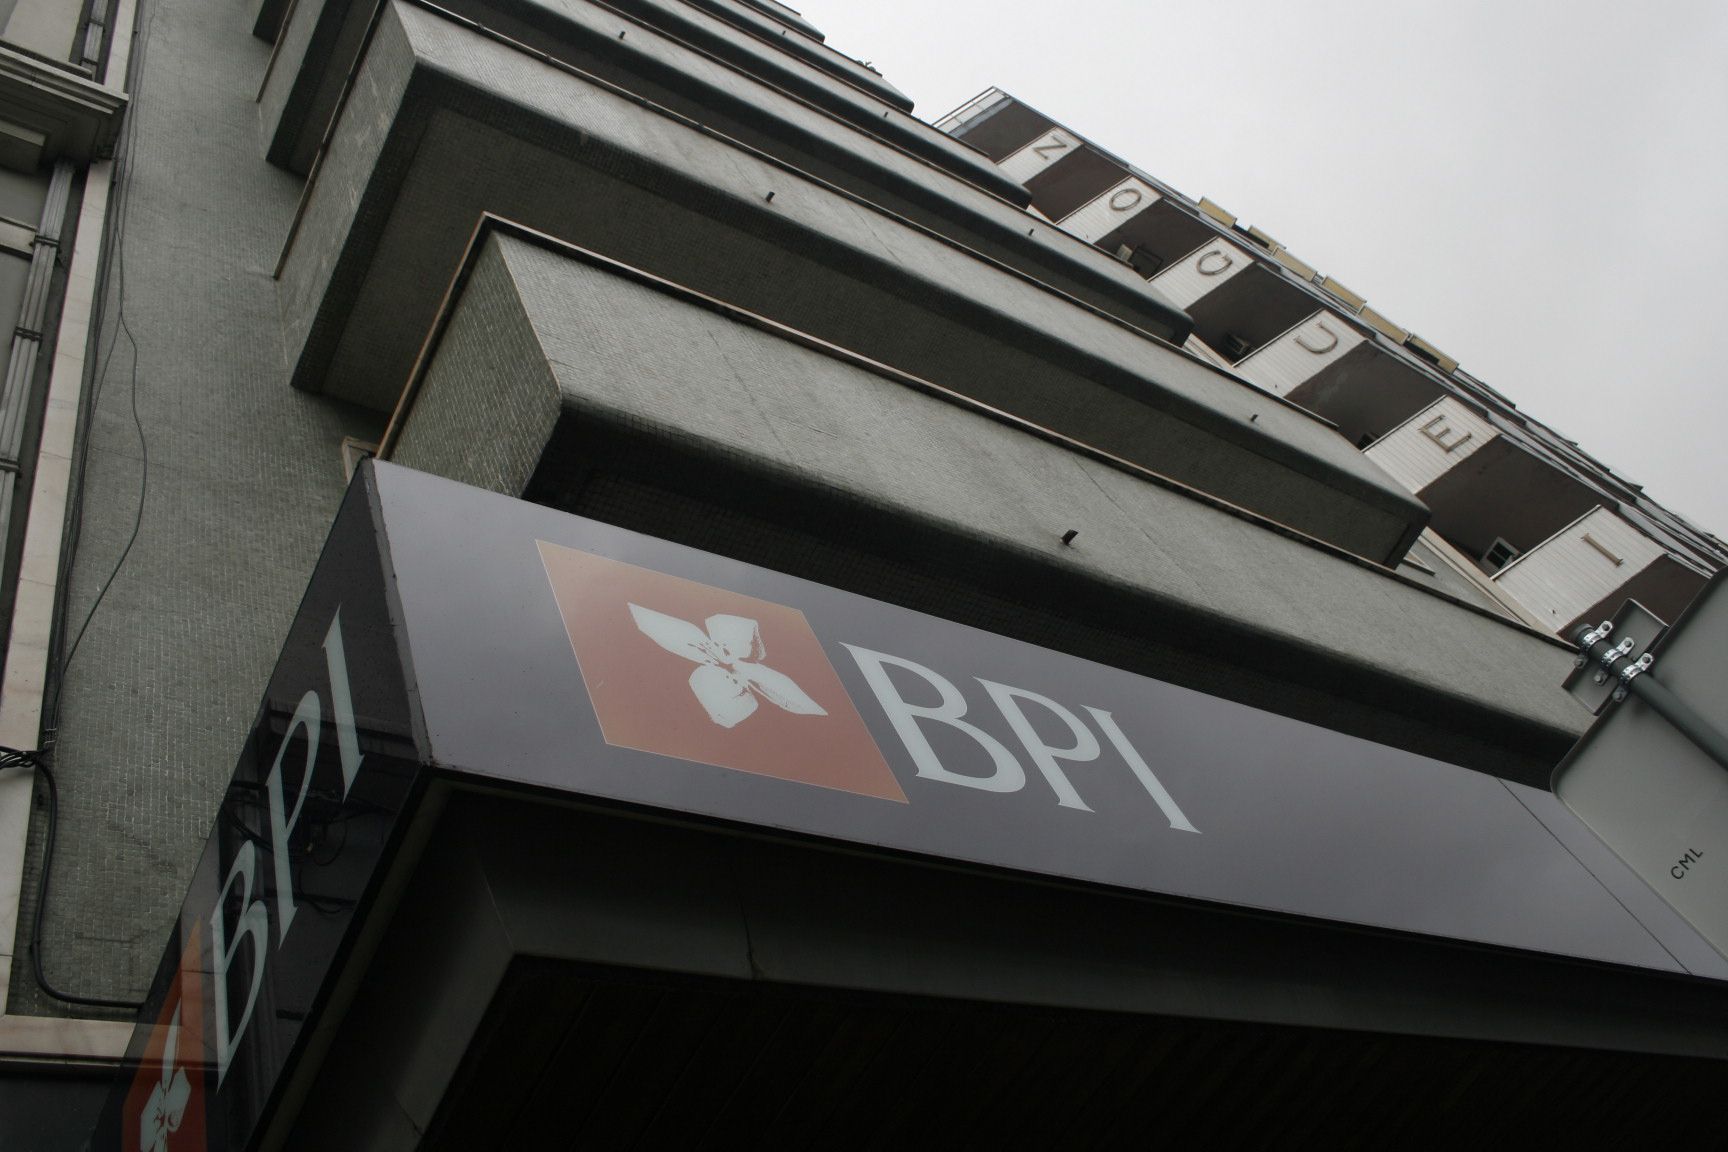 BPI regista prejuízos de 114 milhões de euros até Setembro